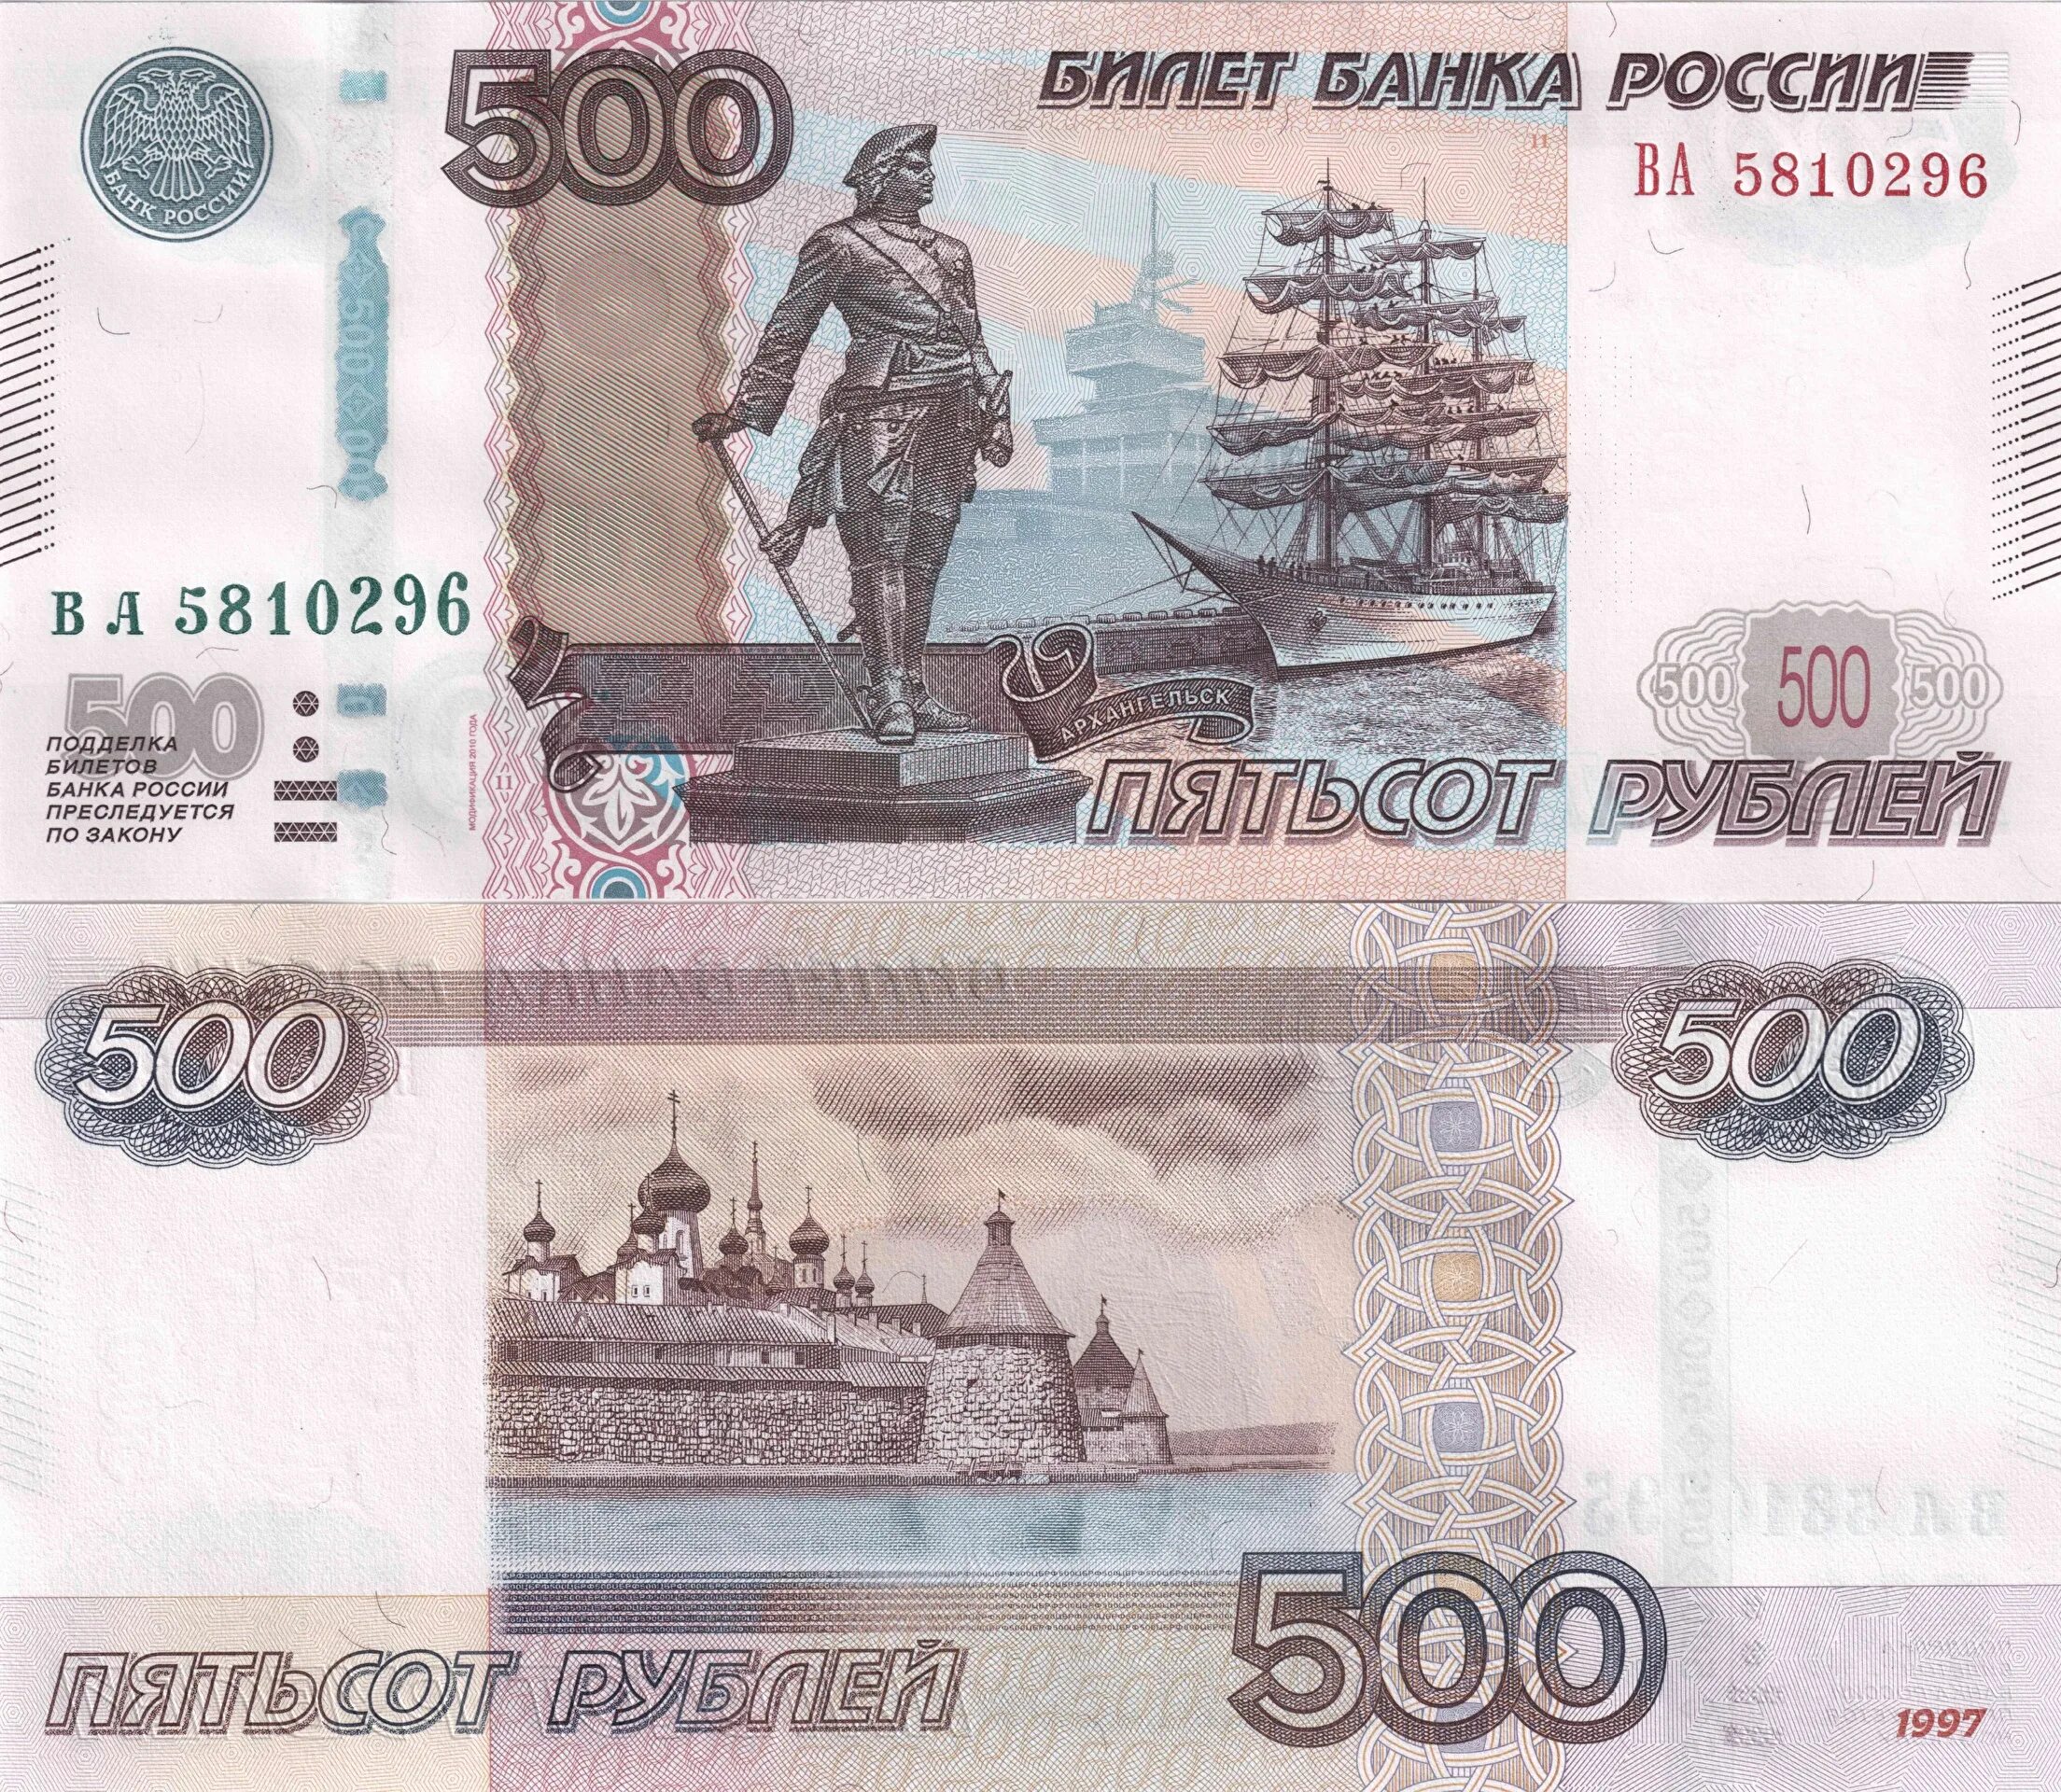 Деньги 2 стороны. Банкнота России 500 рублей. 500 Рублей 1997 модификация 2010 года. Российские купюры 500 рублей.